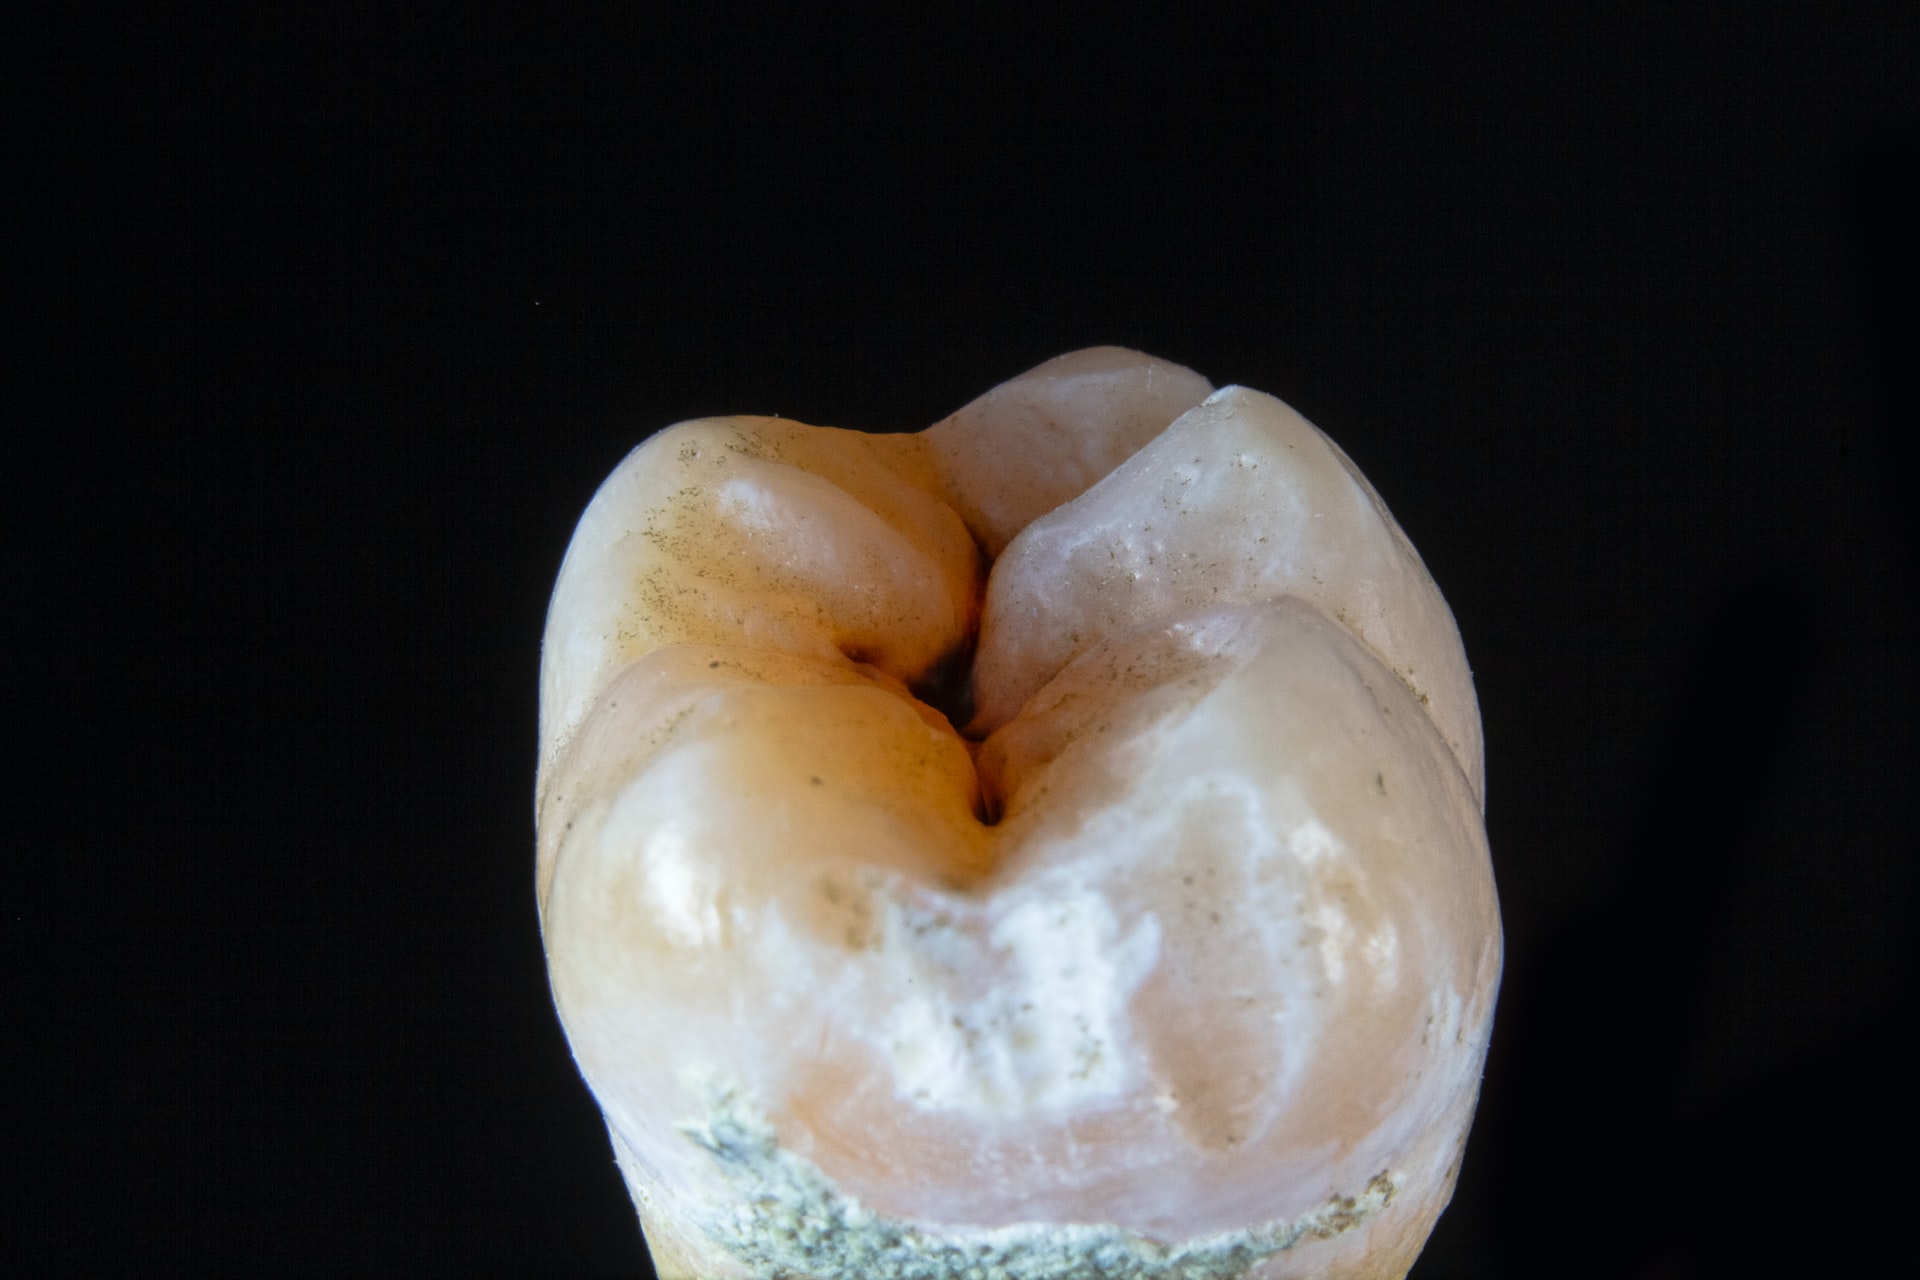 Krank durch Zähne: Symptome im Körper erkennen